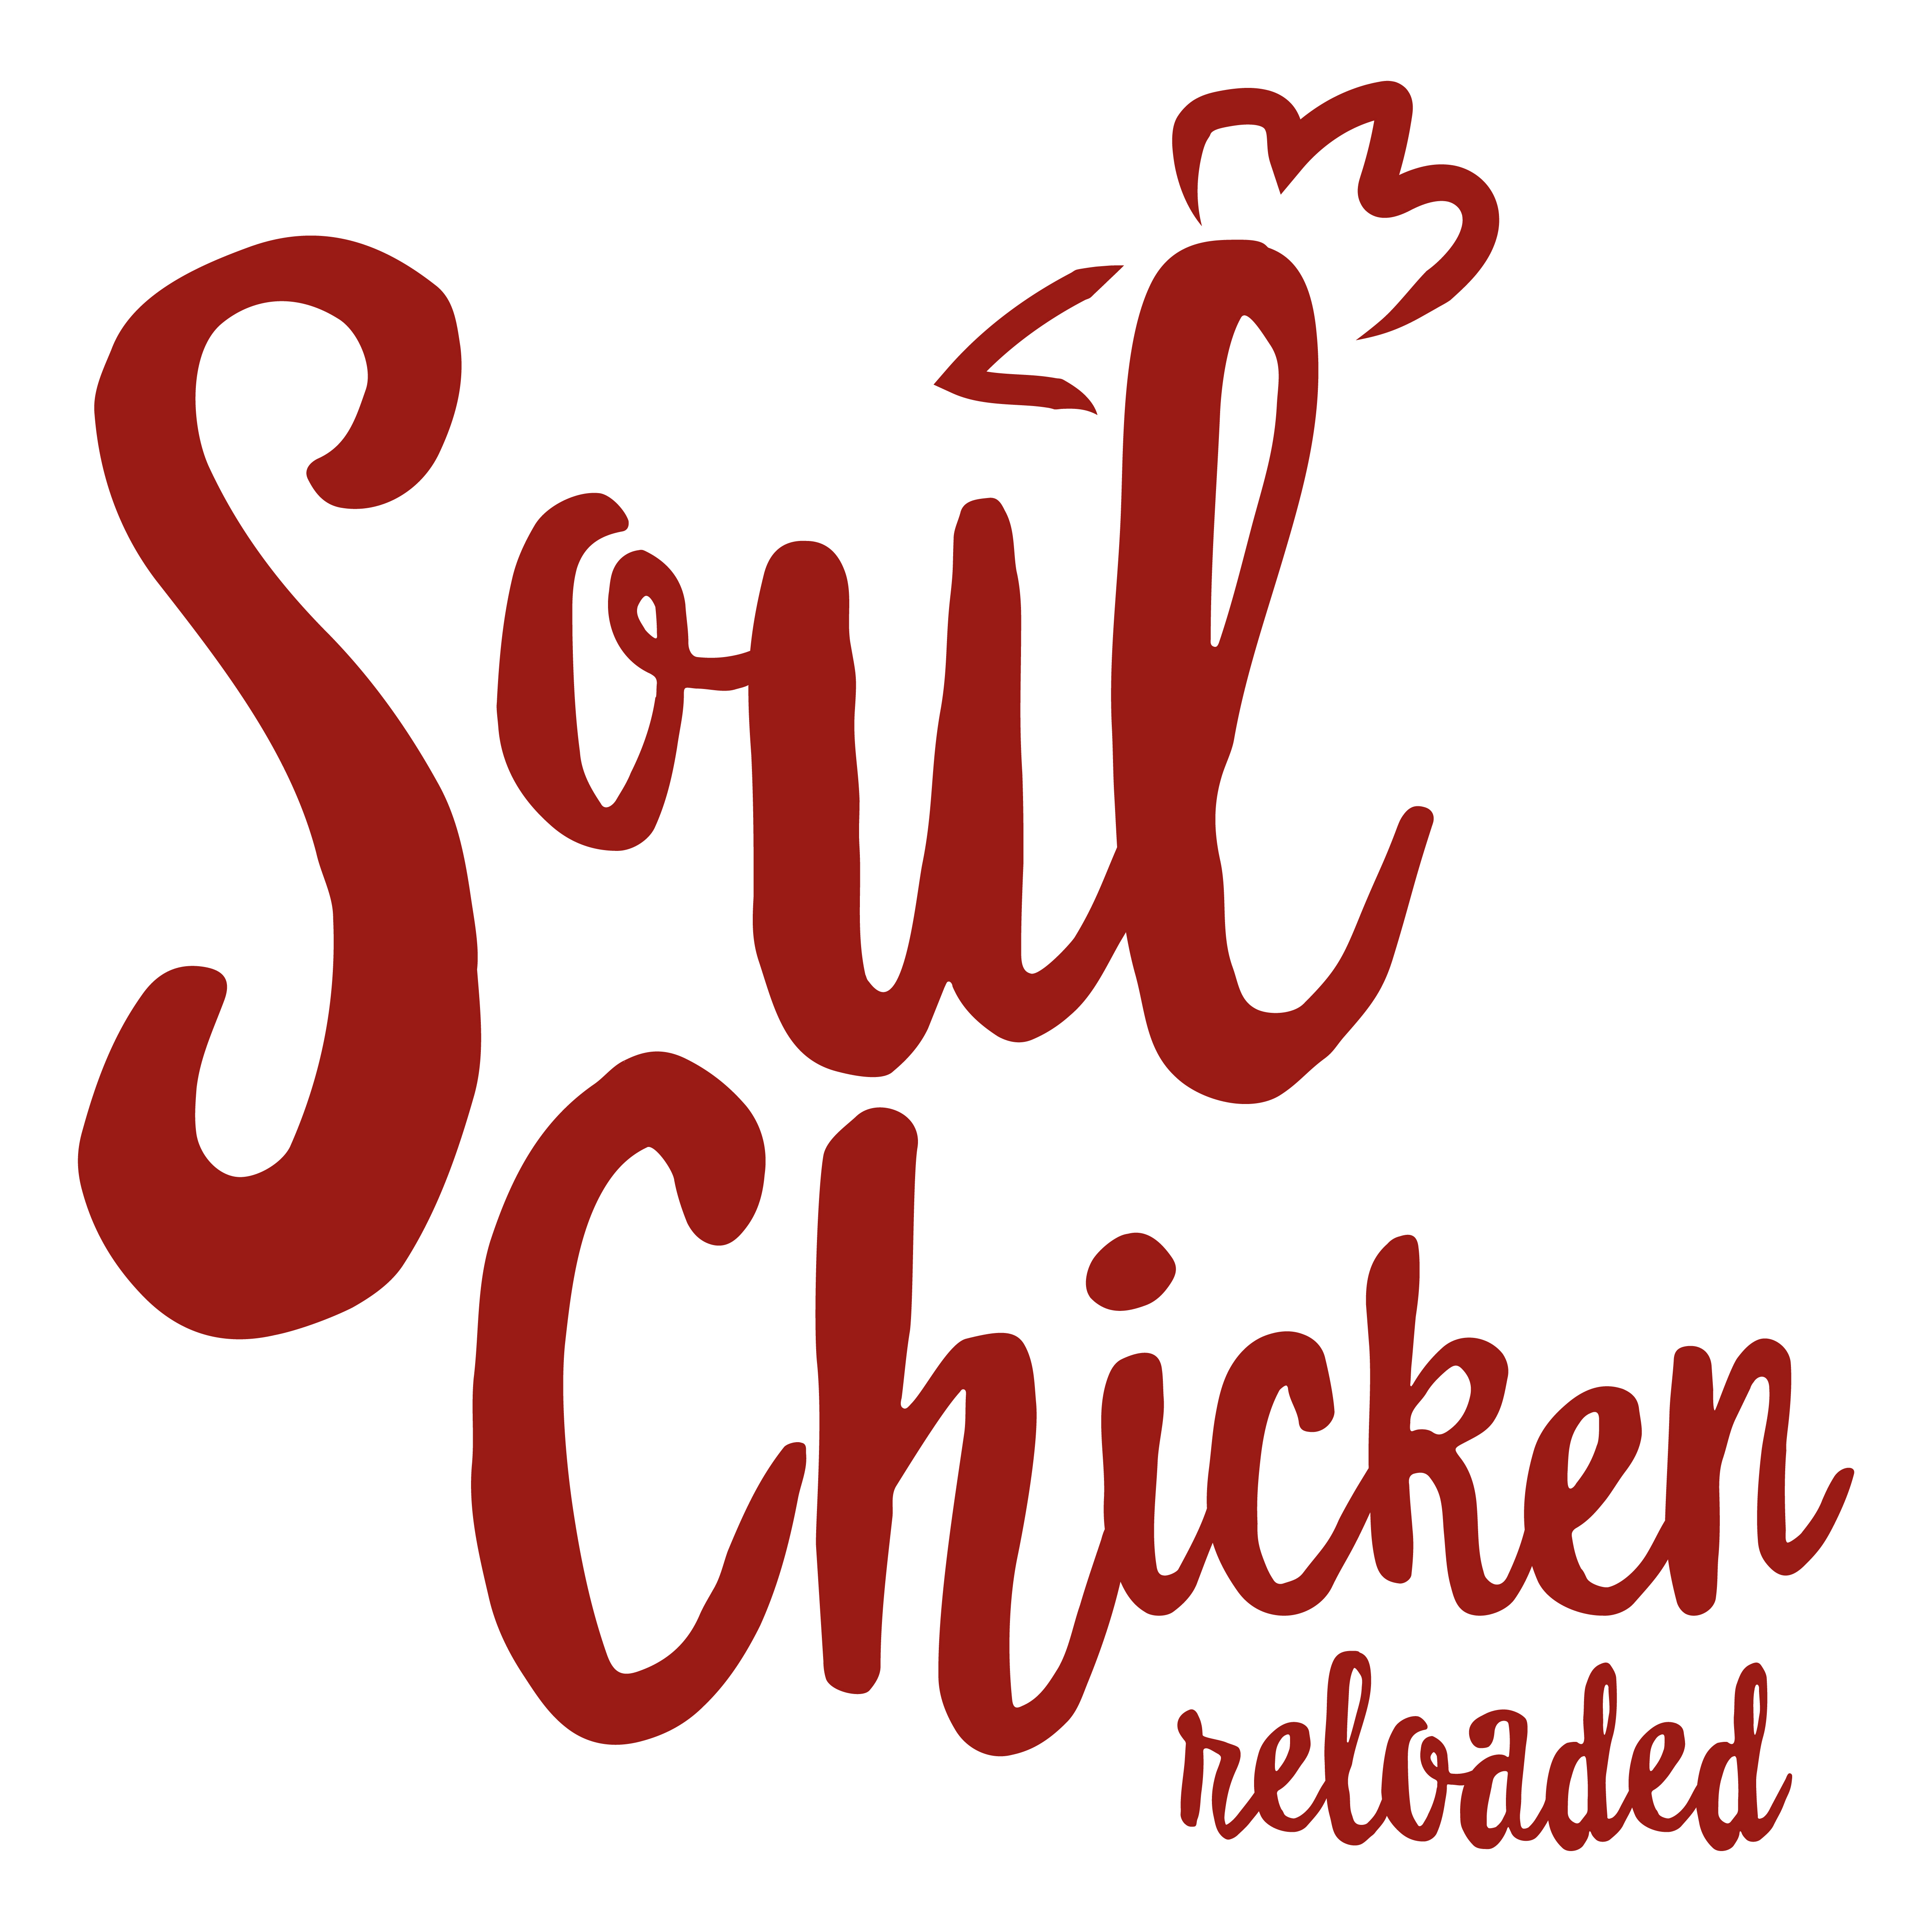 Soulchicken Reloaded